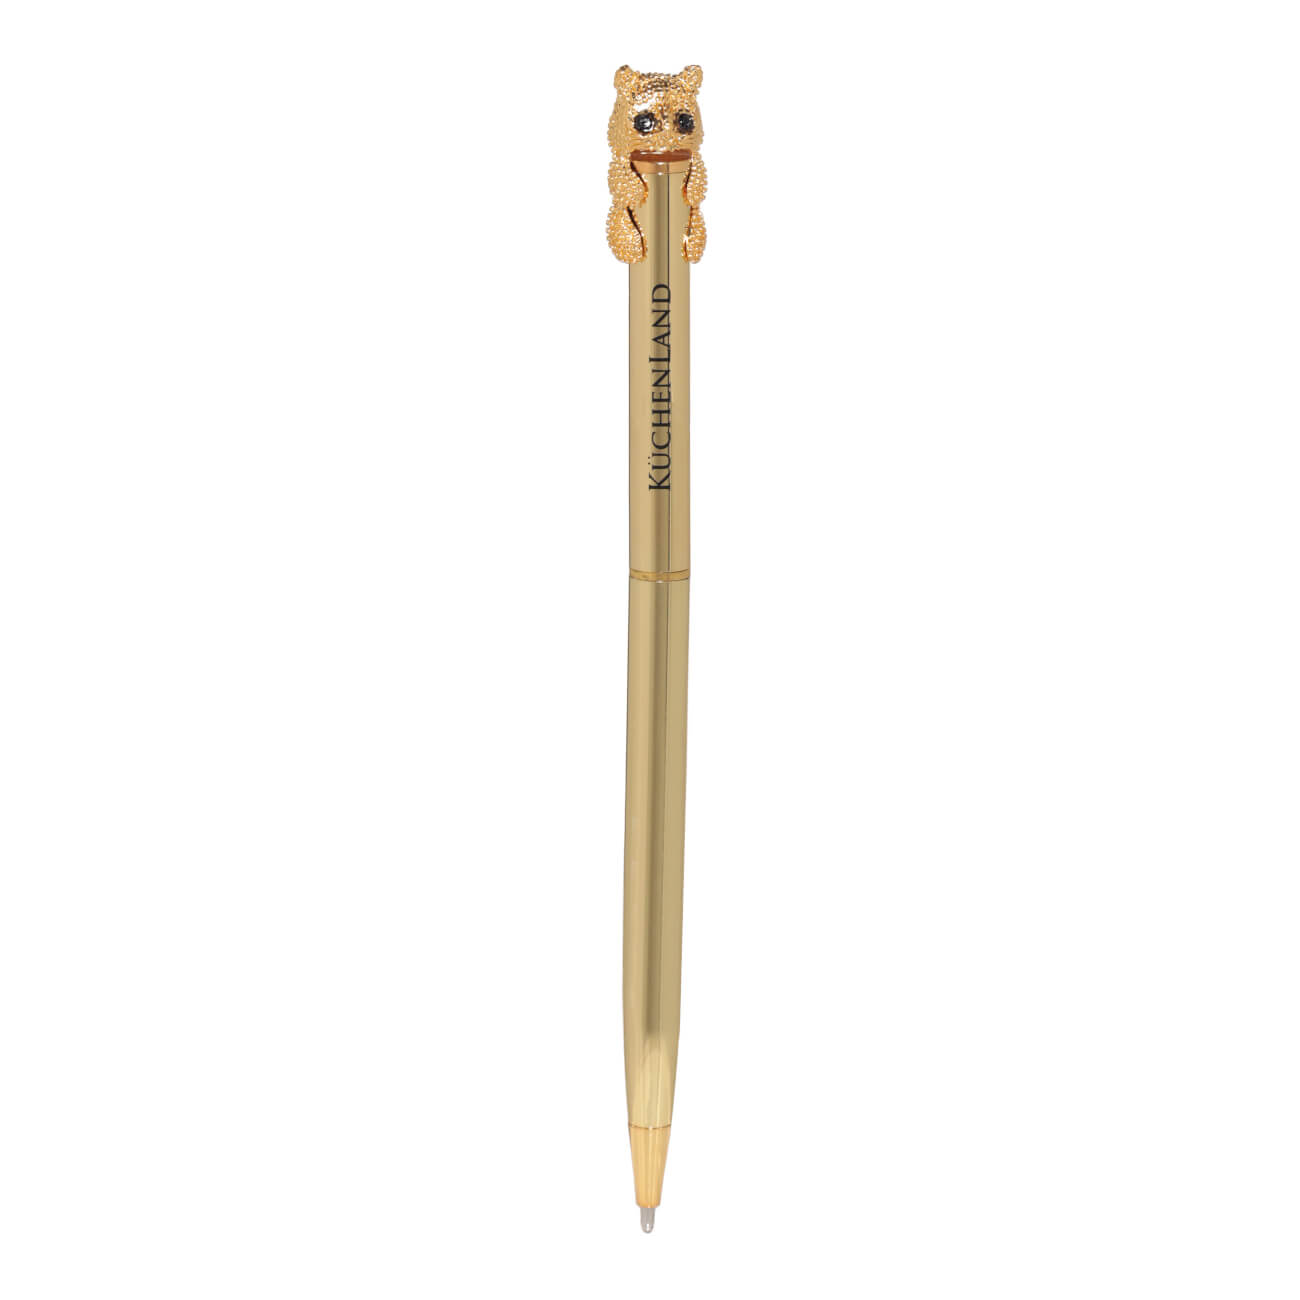 Ручка шариковая, 14 см, с фигуркой, золотистая, Кот, Draw figure масляная шариковая ручка офисмаг